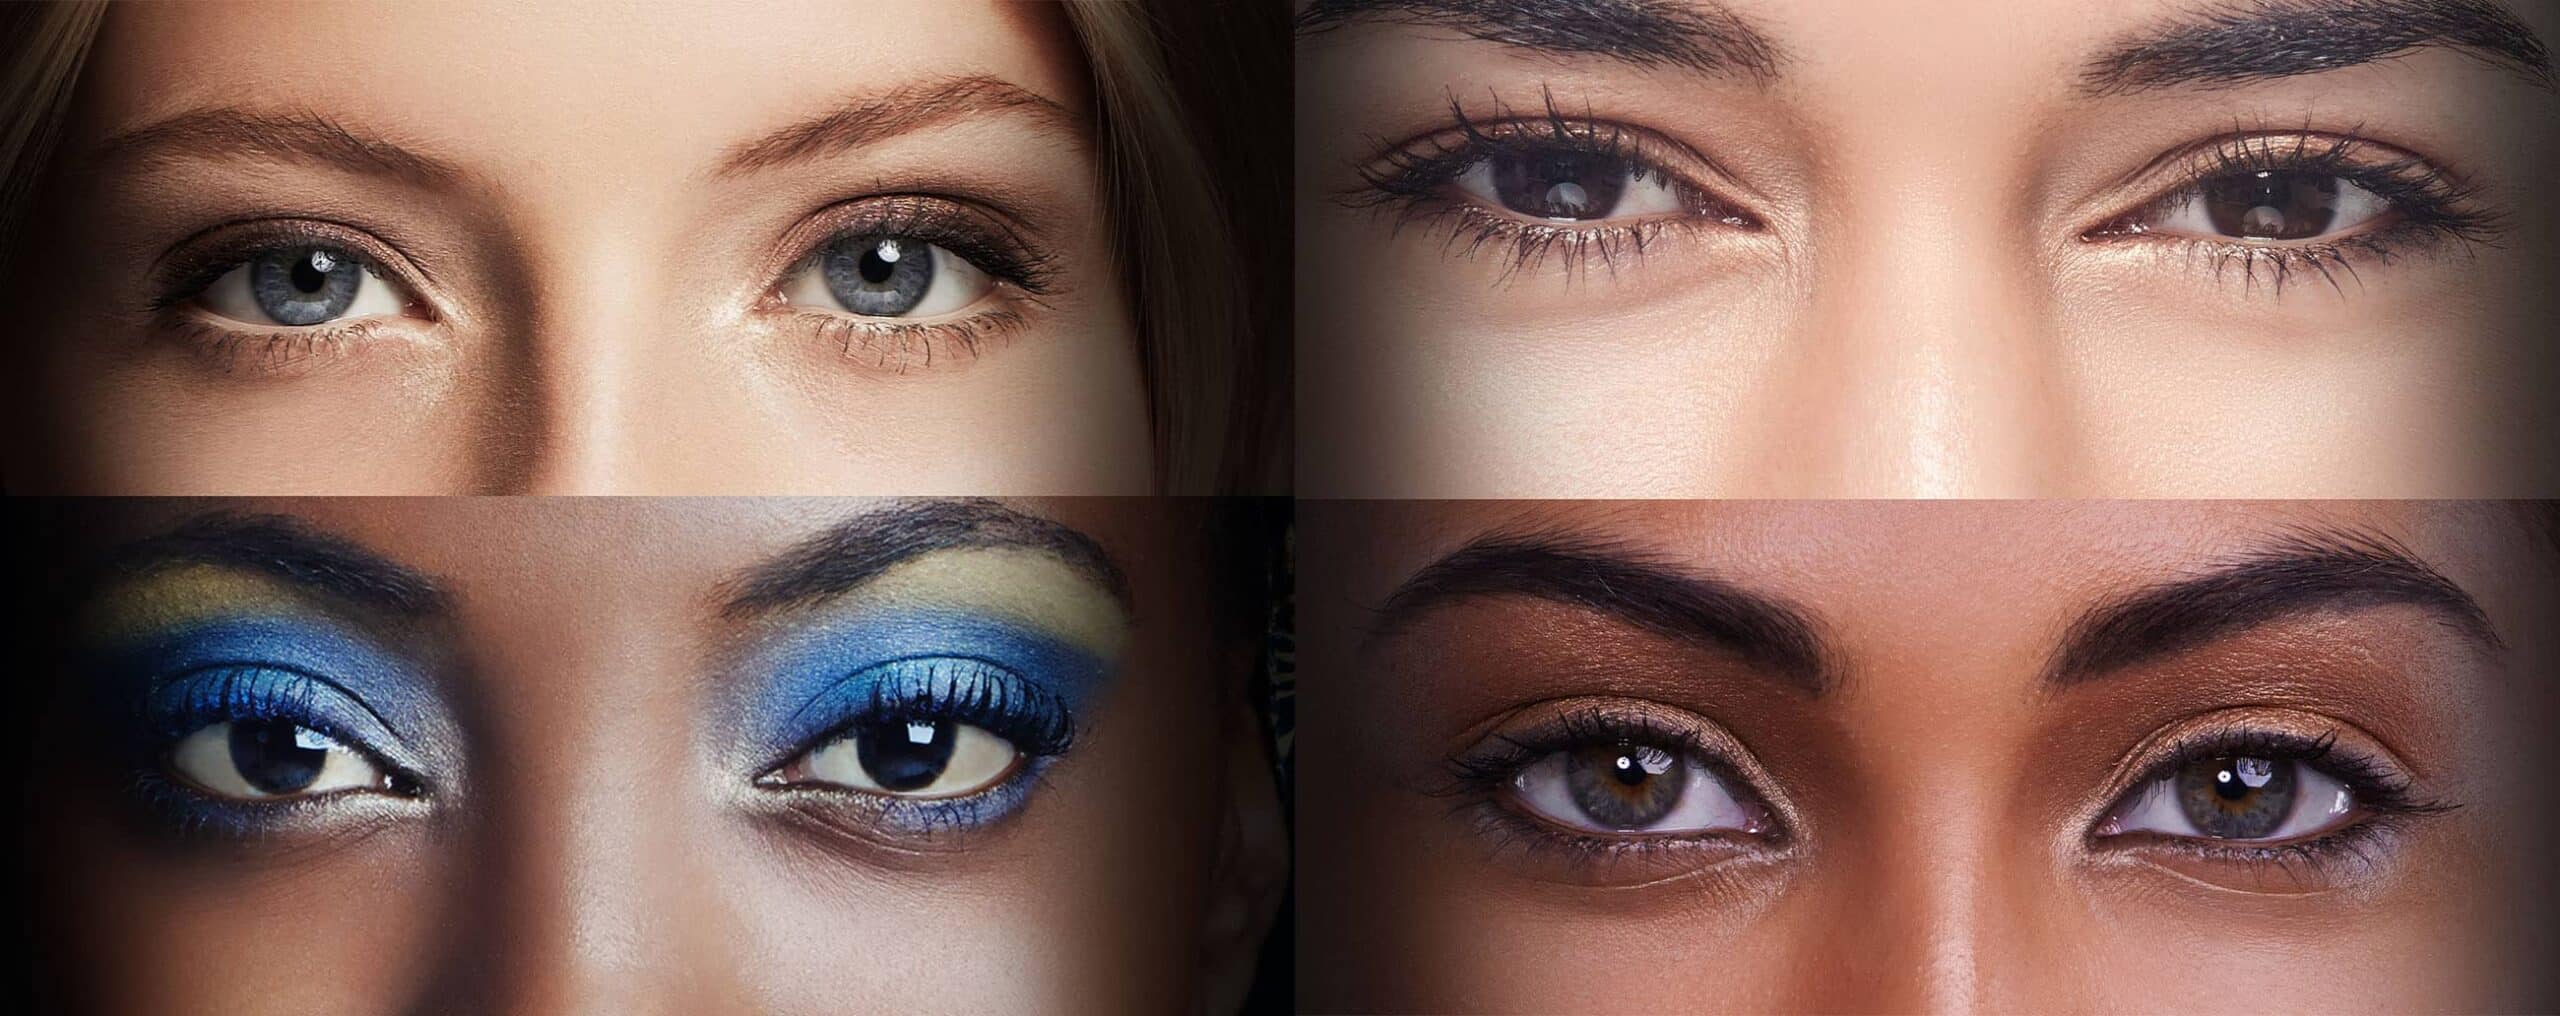 Peut-on combiner le maquillage permanent et la médecine esthétique pour sublimer son regard ? | Dr Masse | Mouans-Sartoux